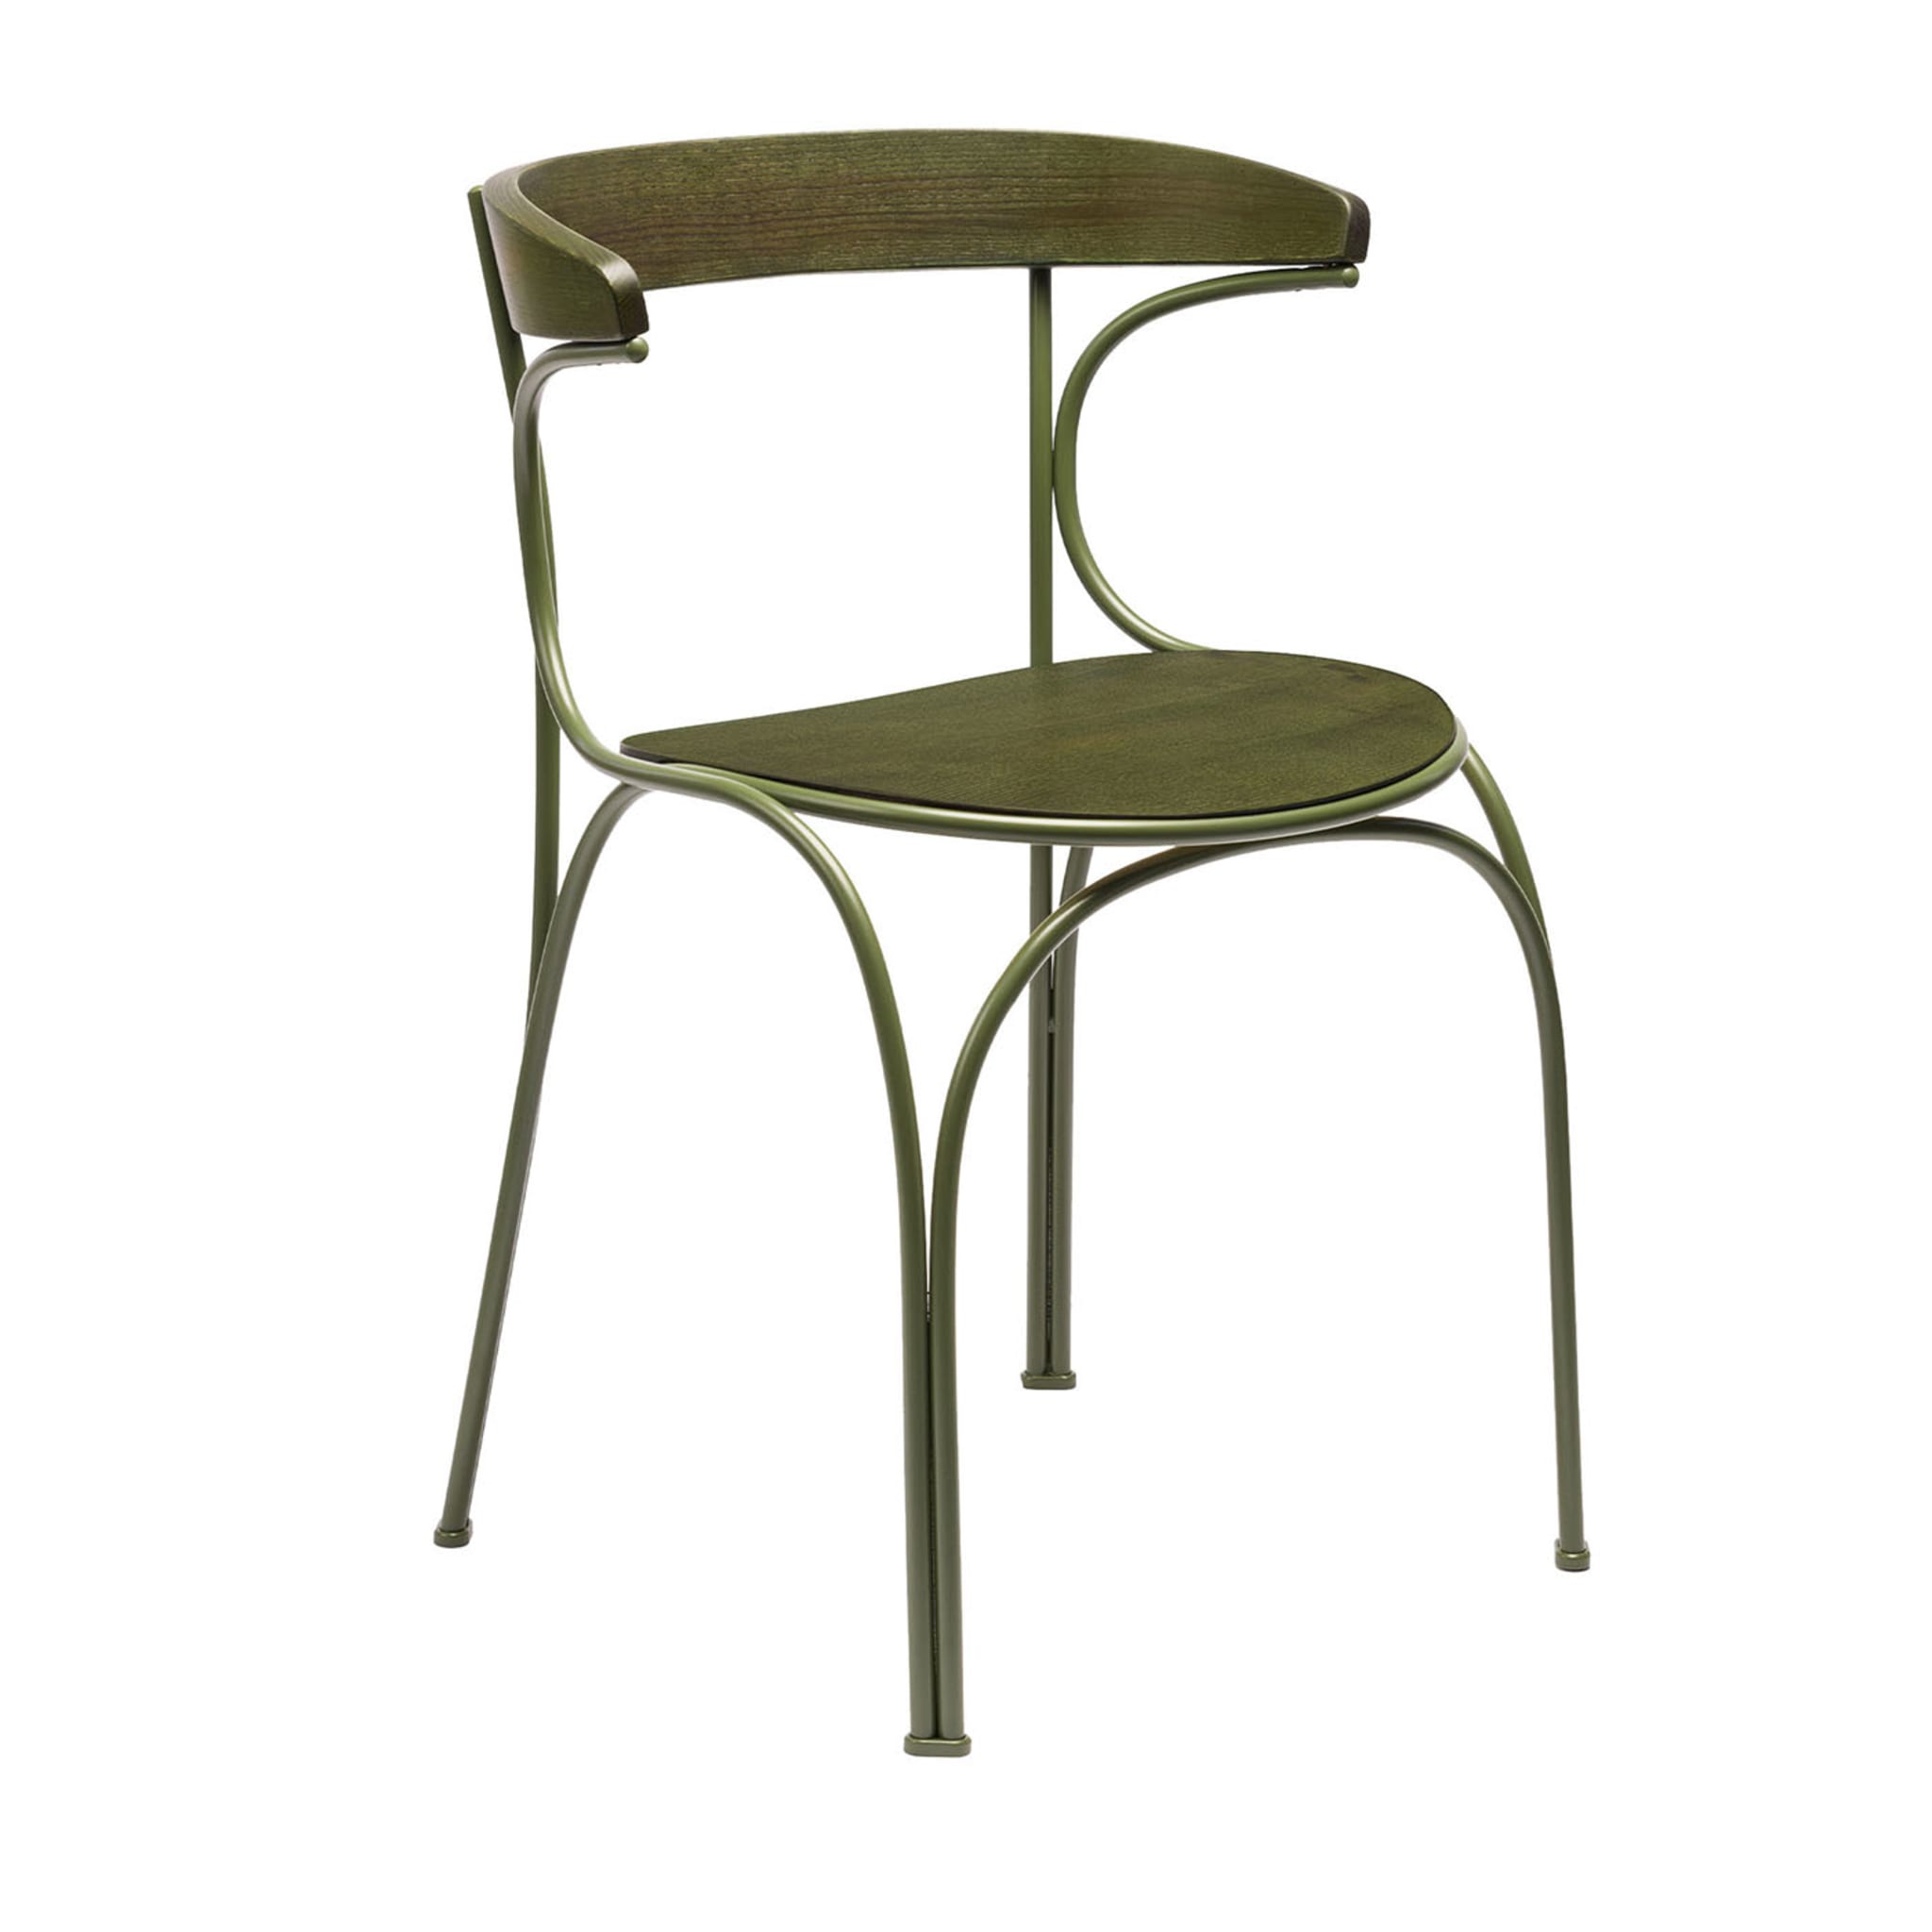 Ample Green Stuhl von Nichetto Studio - Hauptansicht